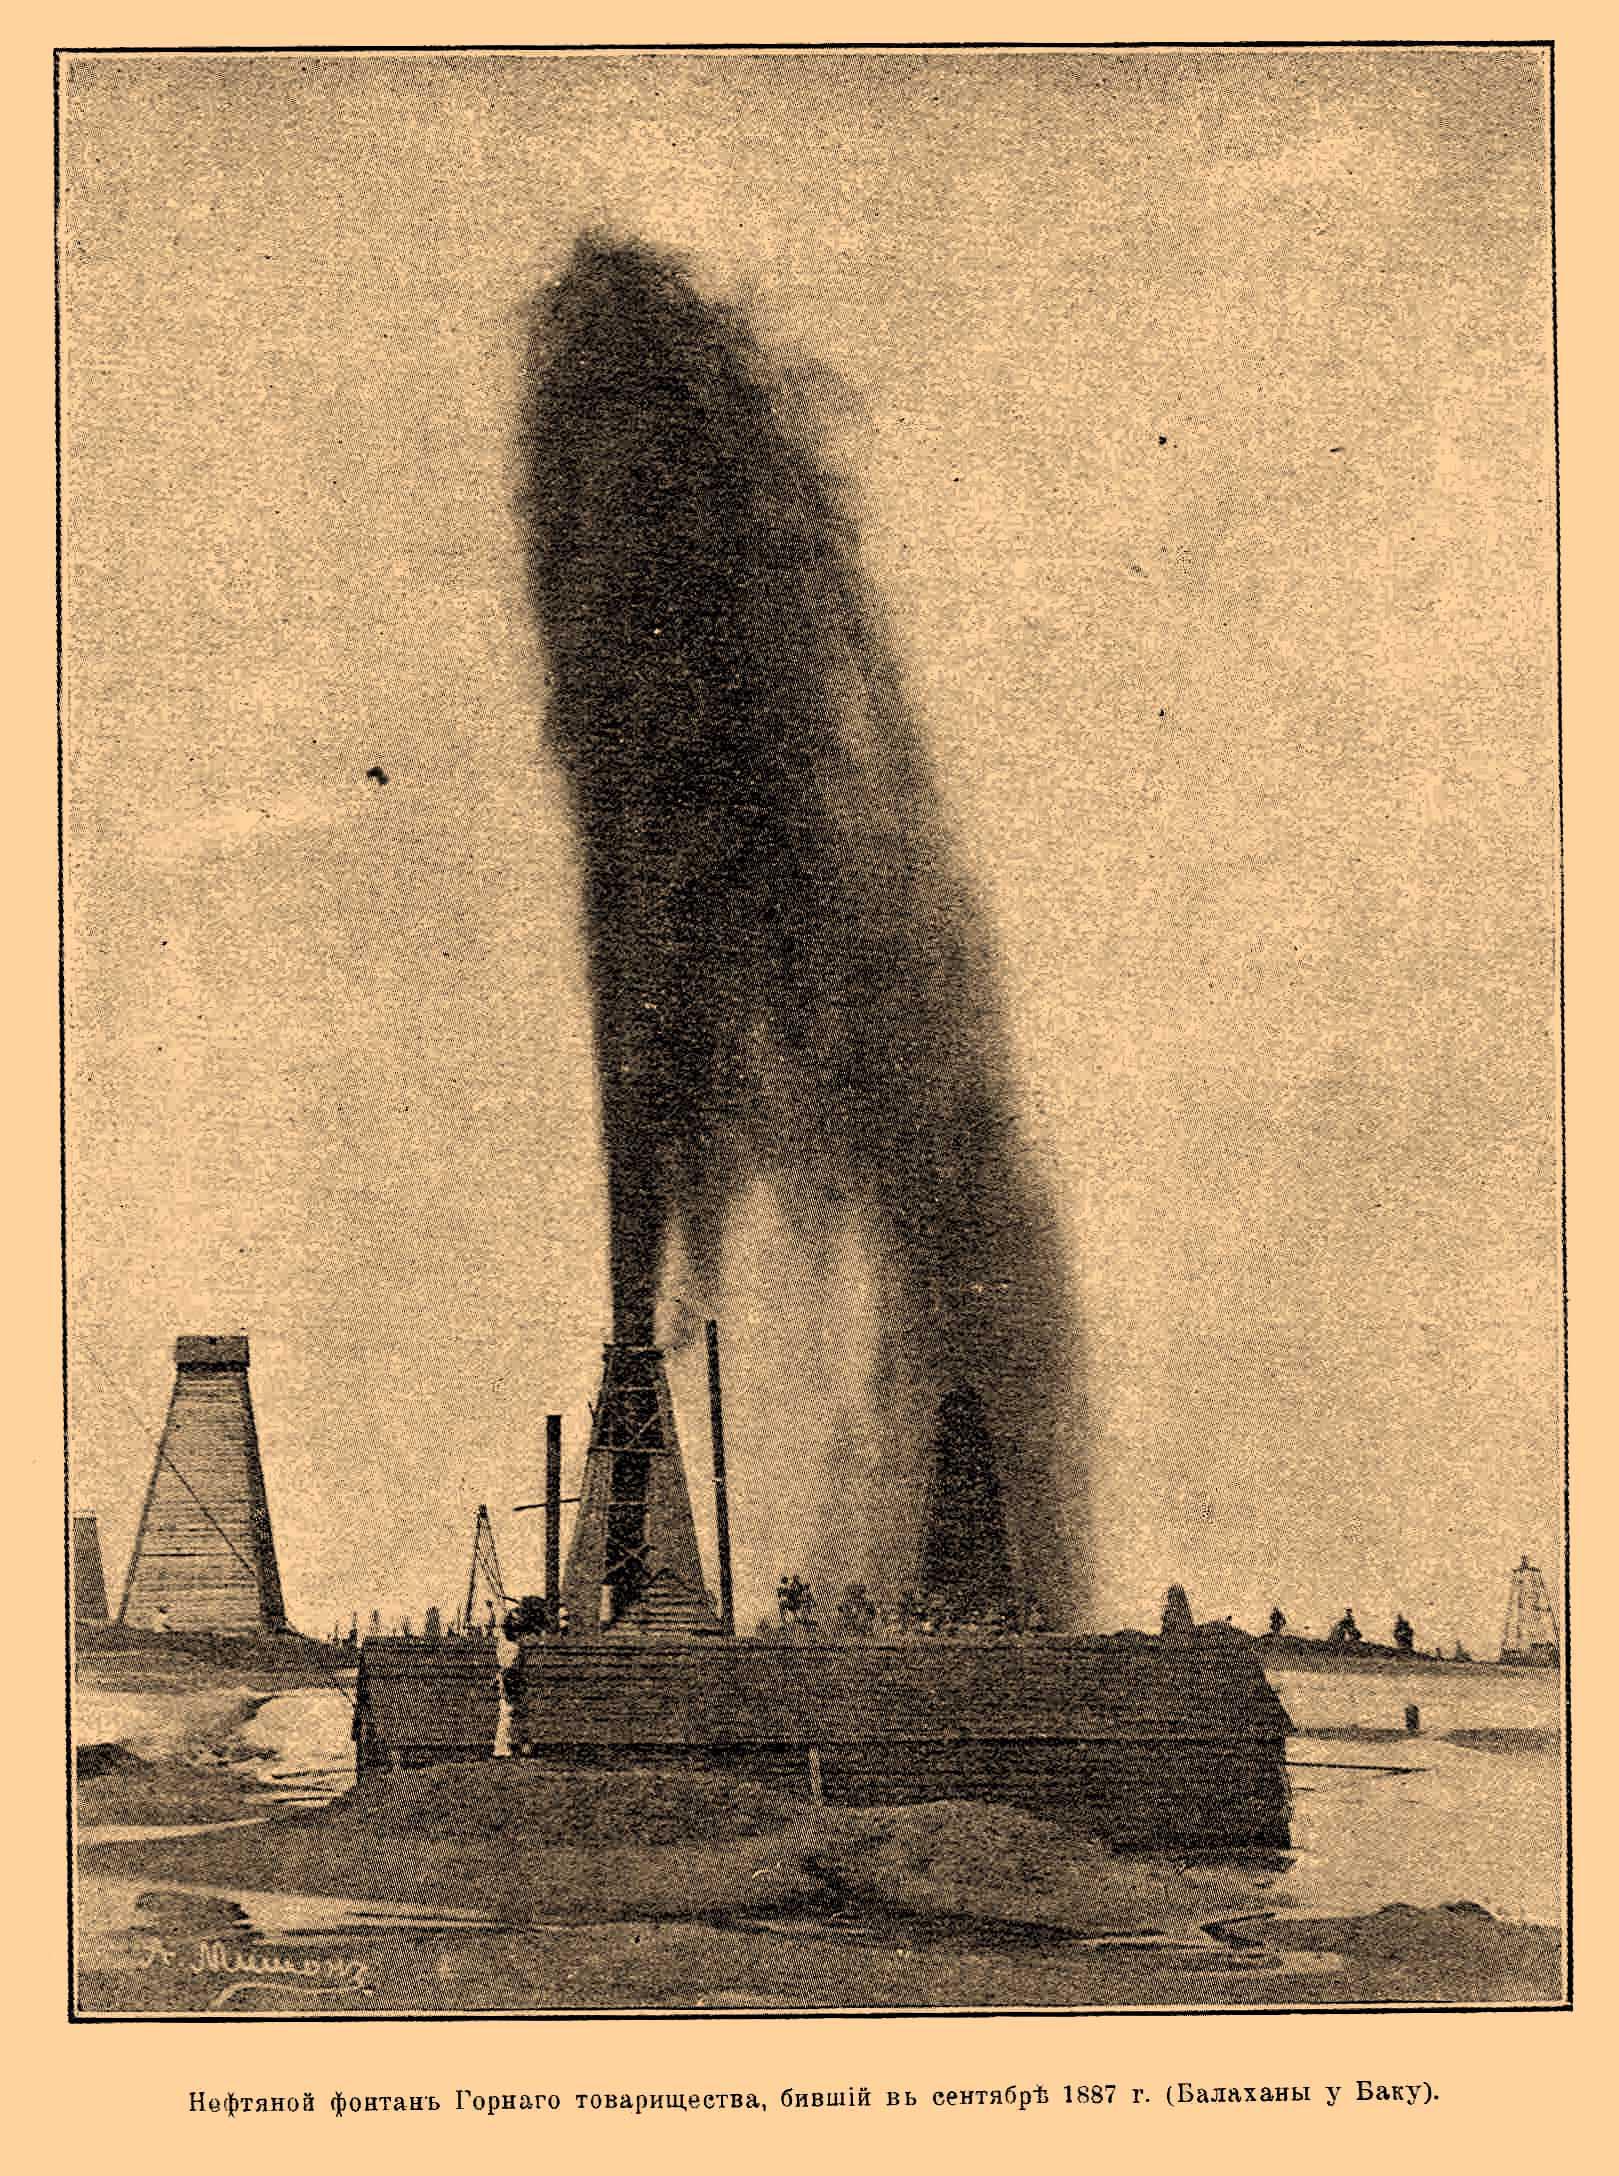 Нефтяной фонтан Горного товарищества, бивший в сентябре 1887 г. (Балаханы у Баку).